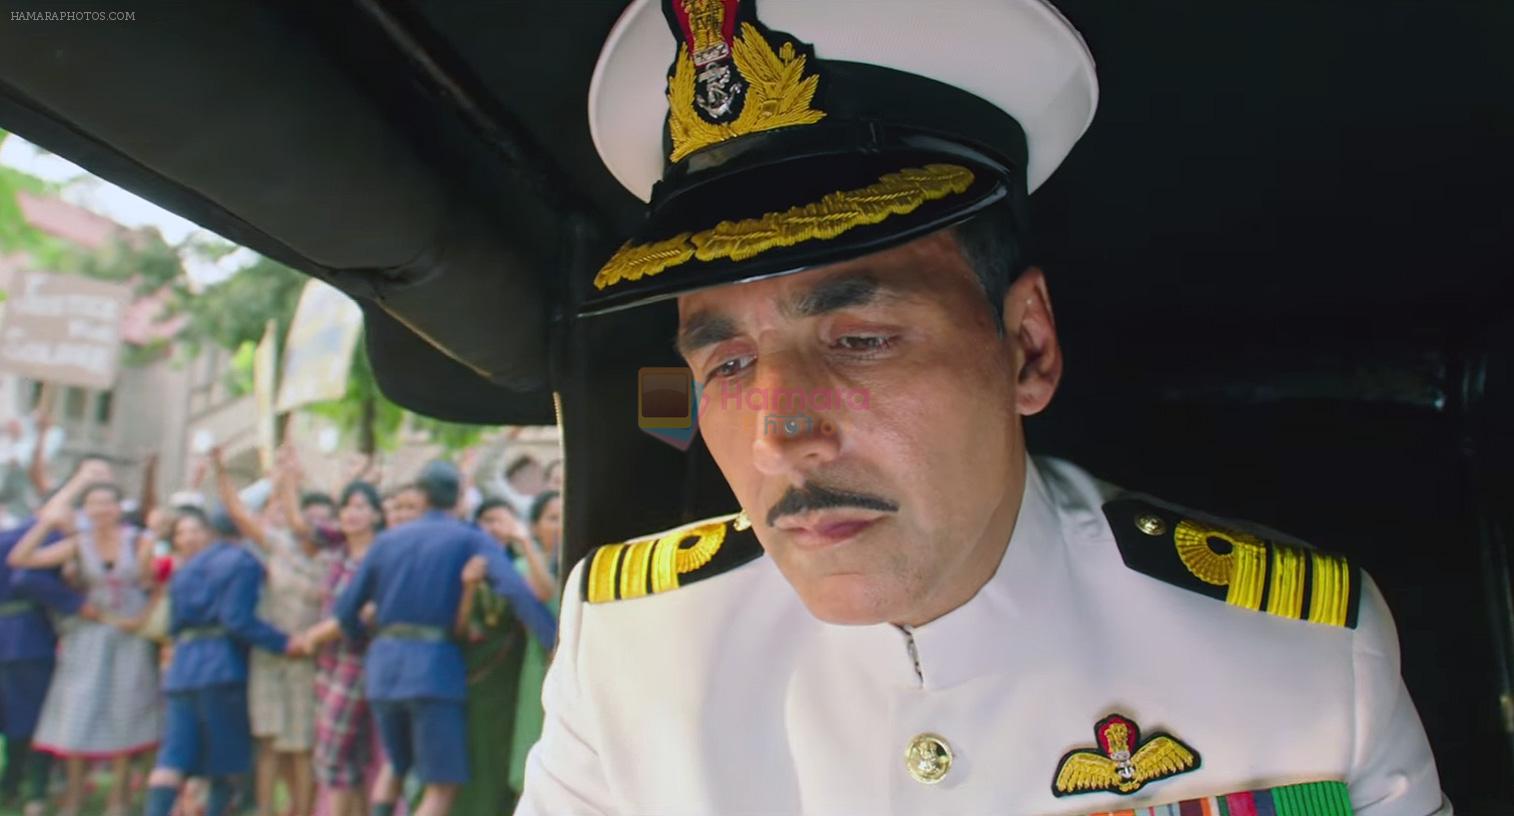 Akshay Kumar as Rustom Pavri in Rustom Movie Stills